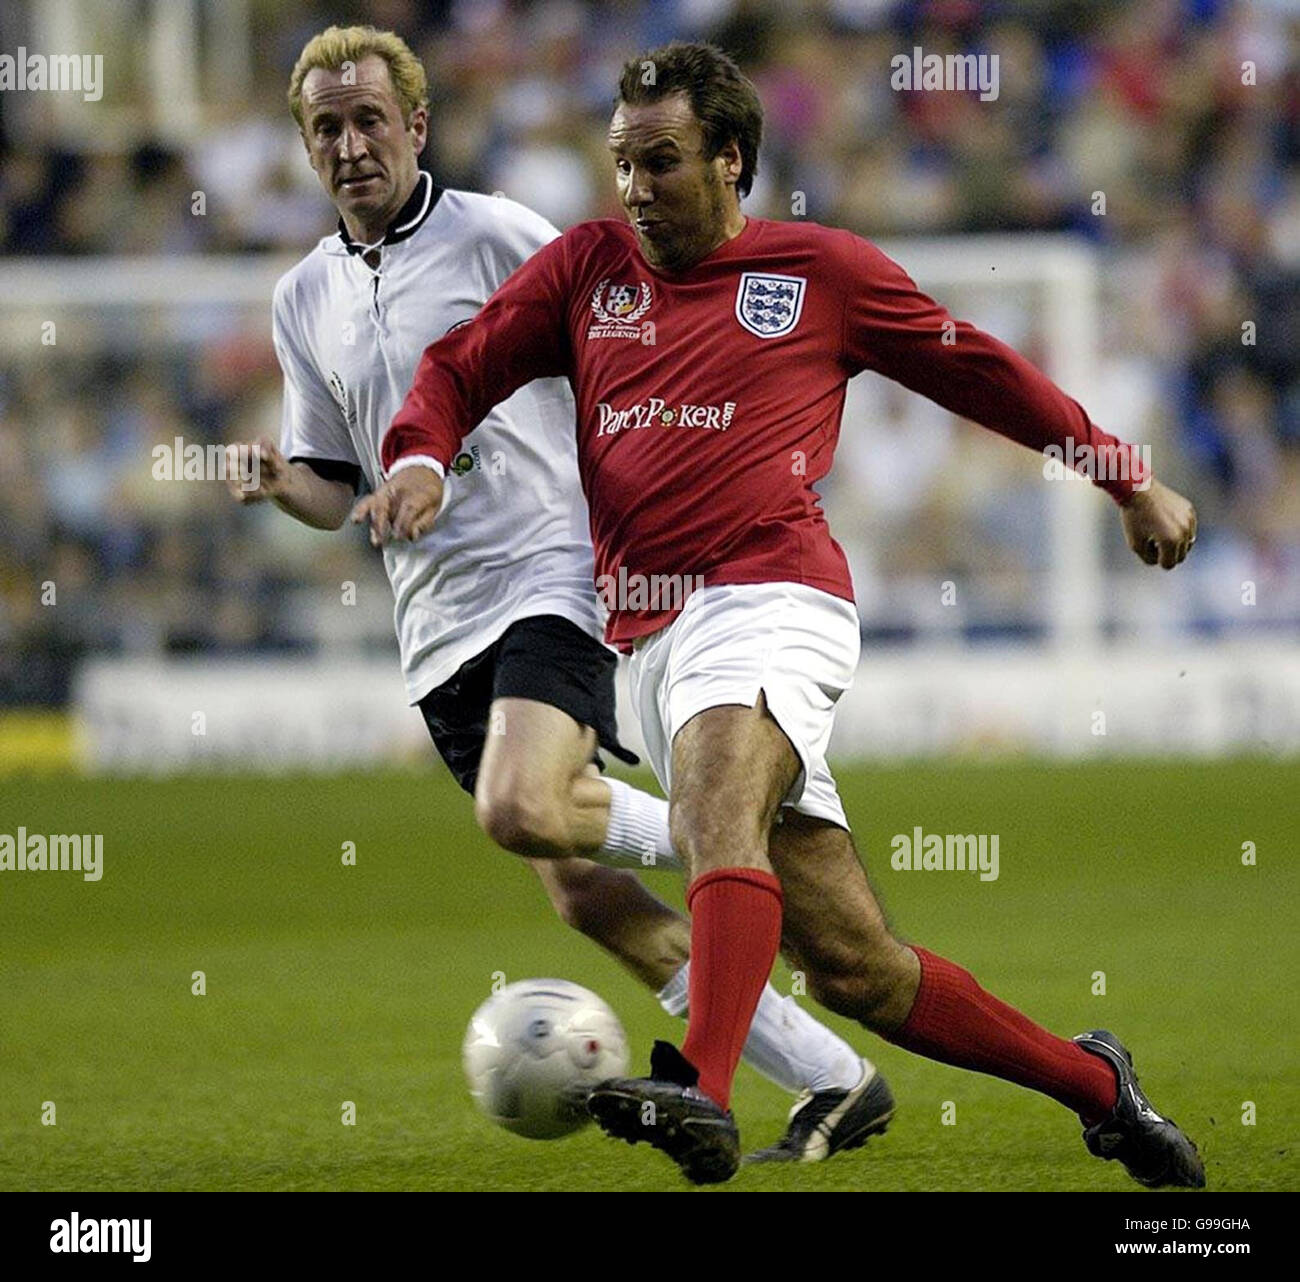 Der englische Paul Merson (R) im Einsatz gegen den deutschen Peter Lohmeyer während des Legends-Spiels im Madejski-Stadion in Reading. Stockfoto